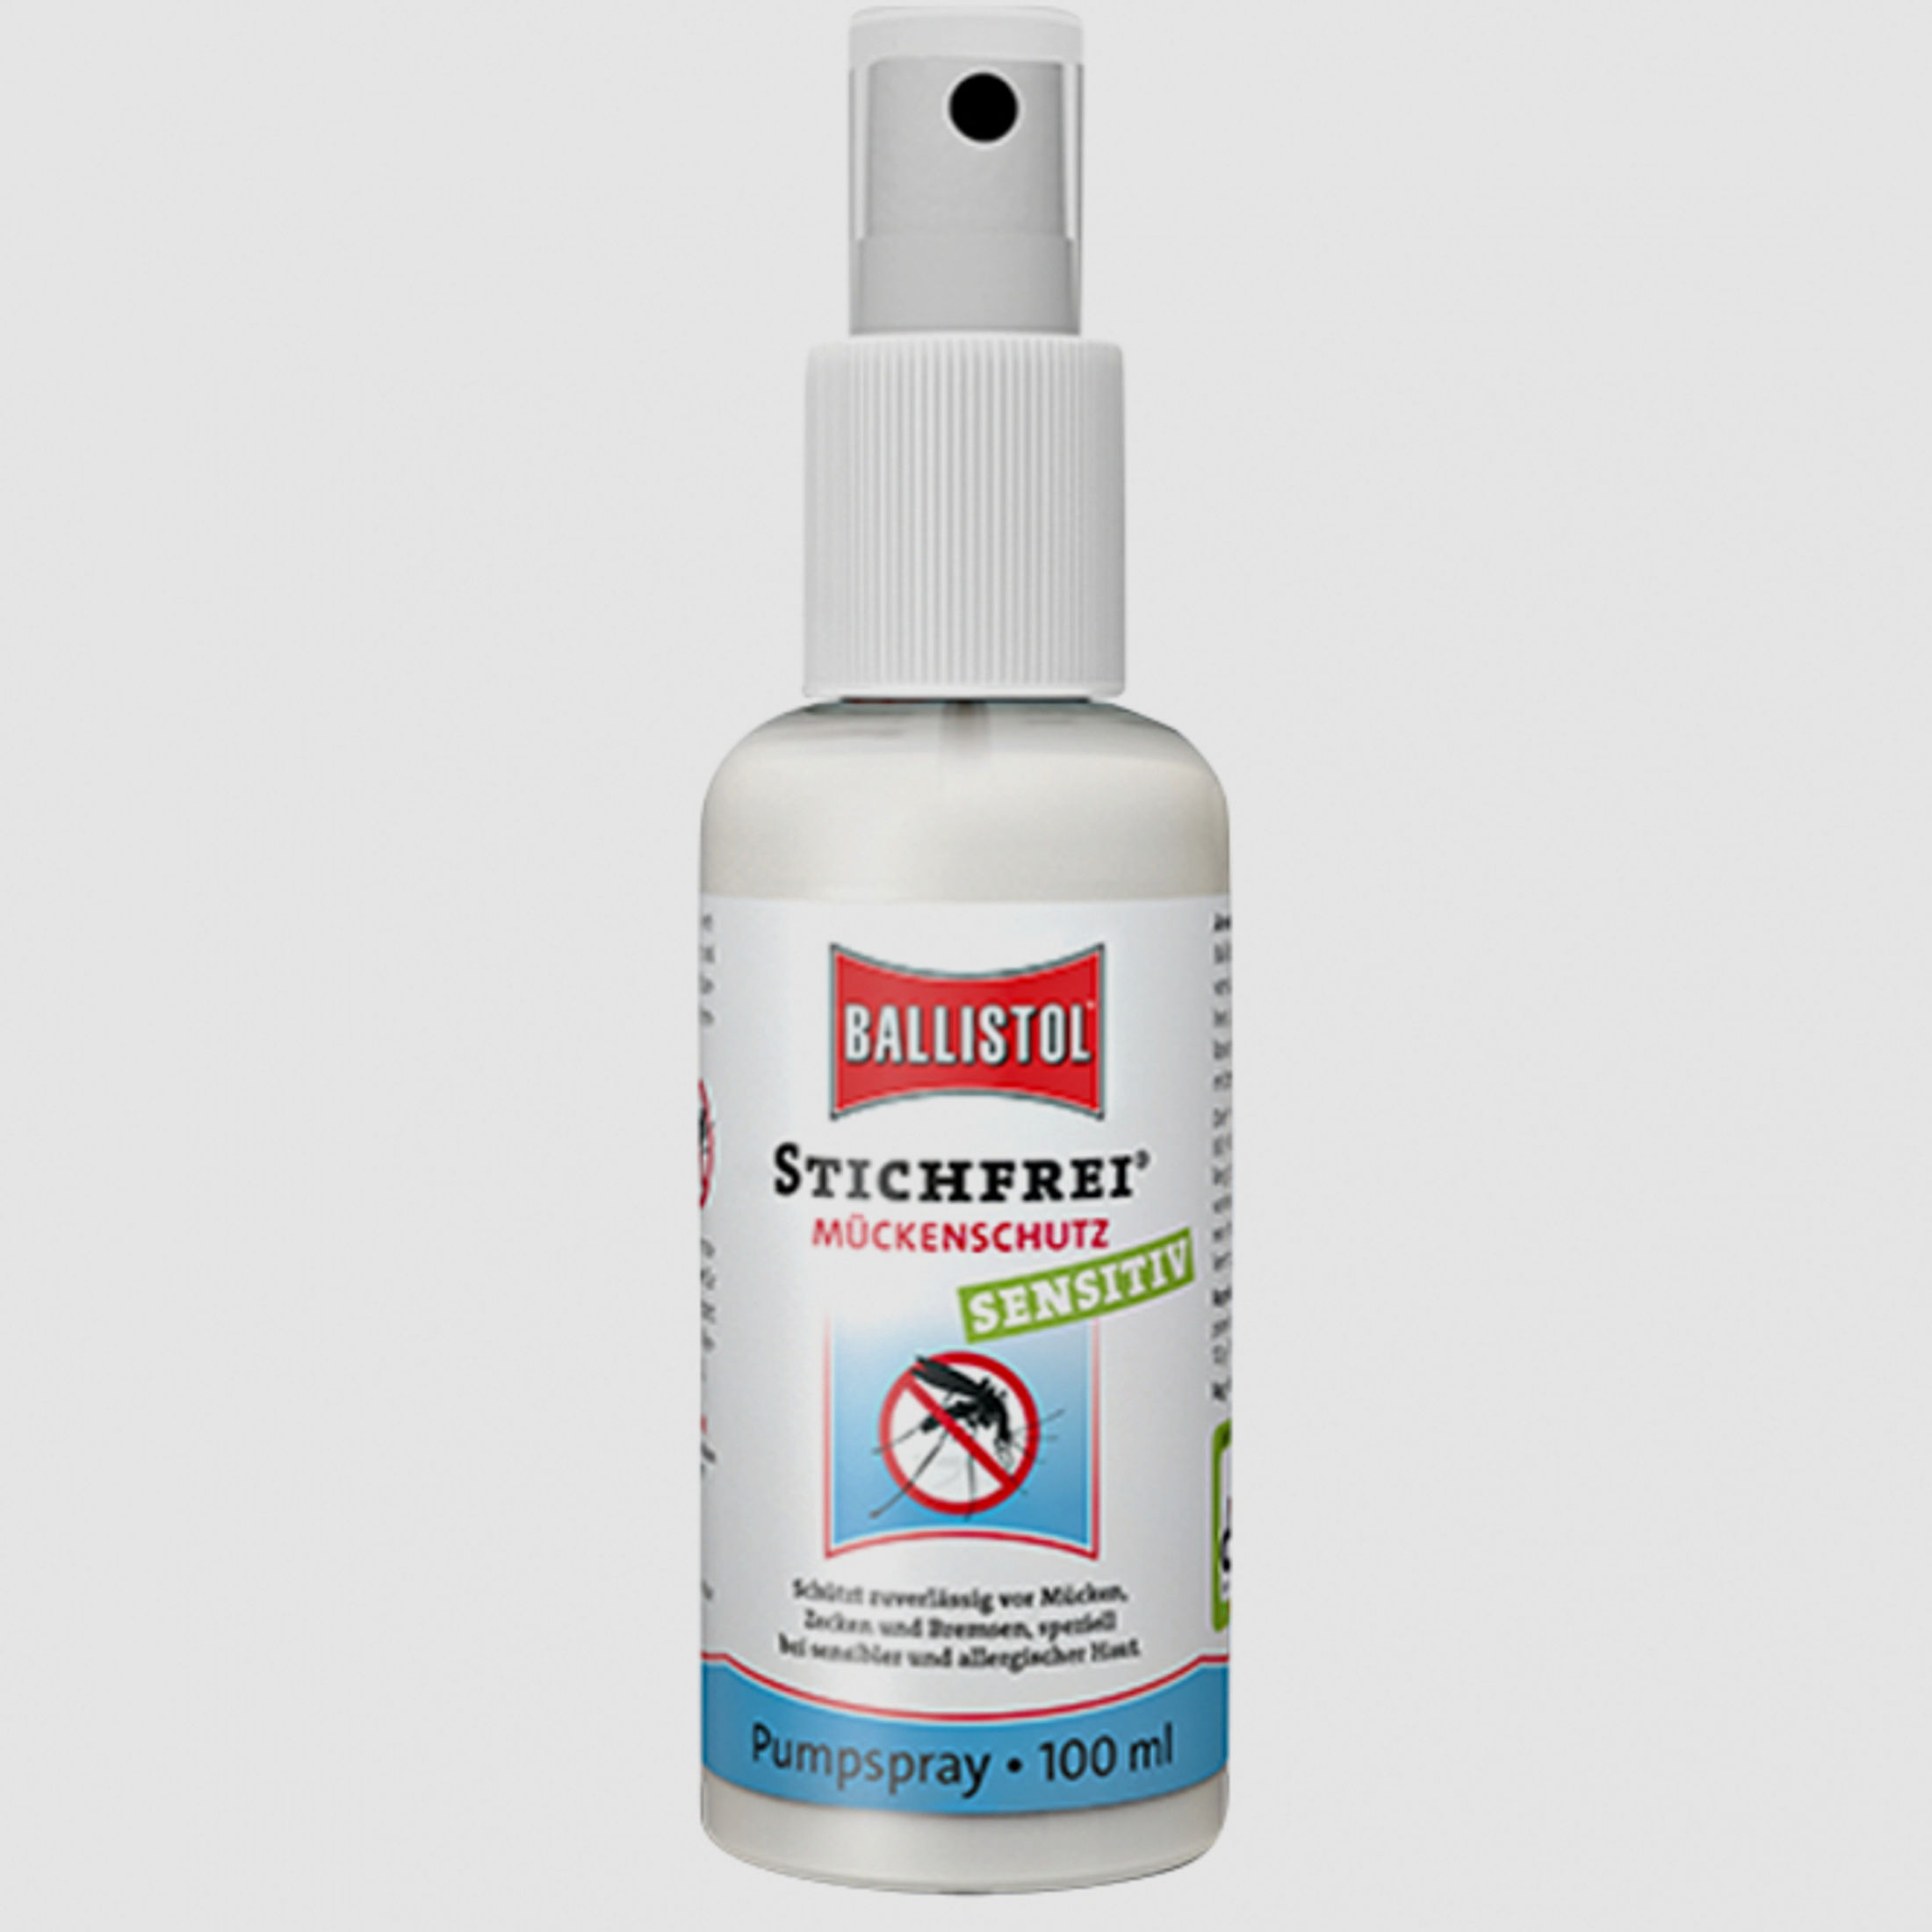 Ballistol       Ballistol   Stichfrei® Sensitiv
Mückenschutz Spray